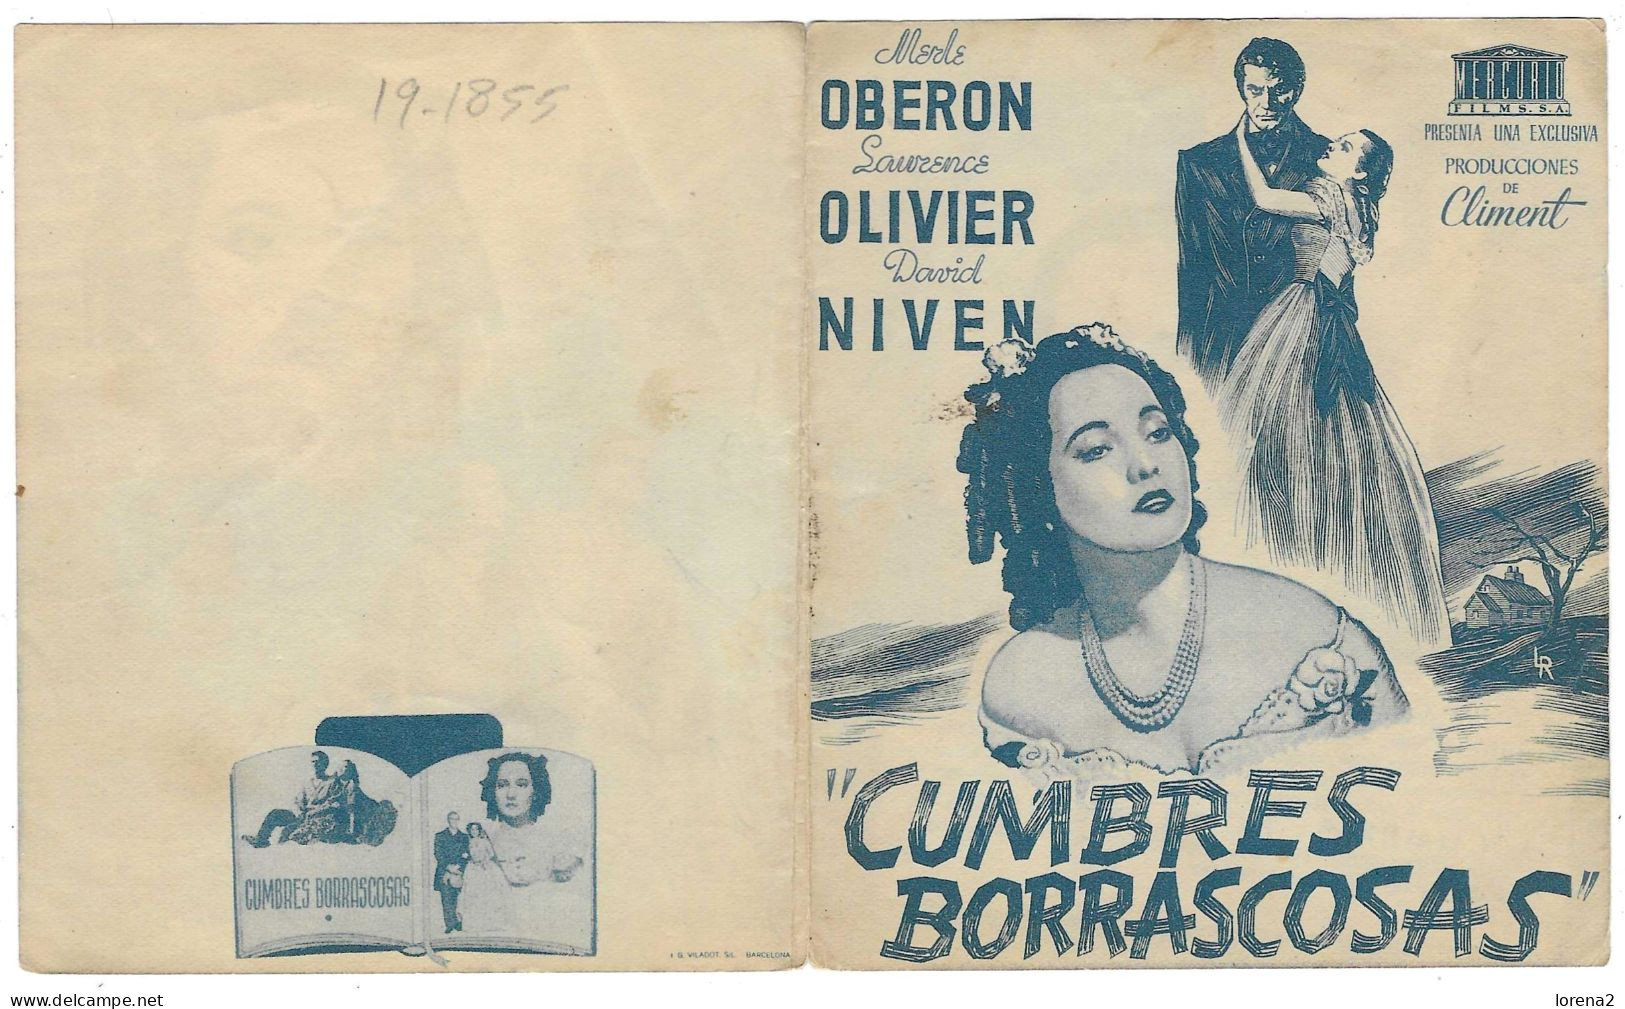 Programa Cine. Cumbres Borrascosas. Laurence Olivier. 19-1855 - Werbetrailer